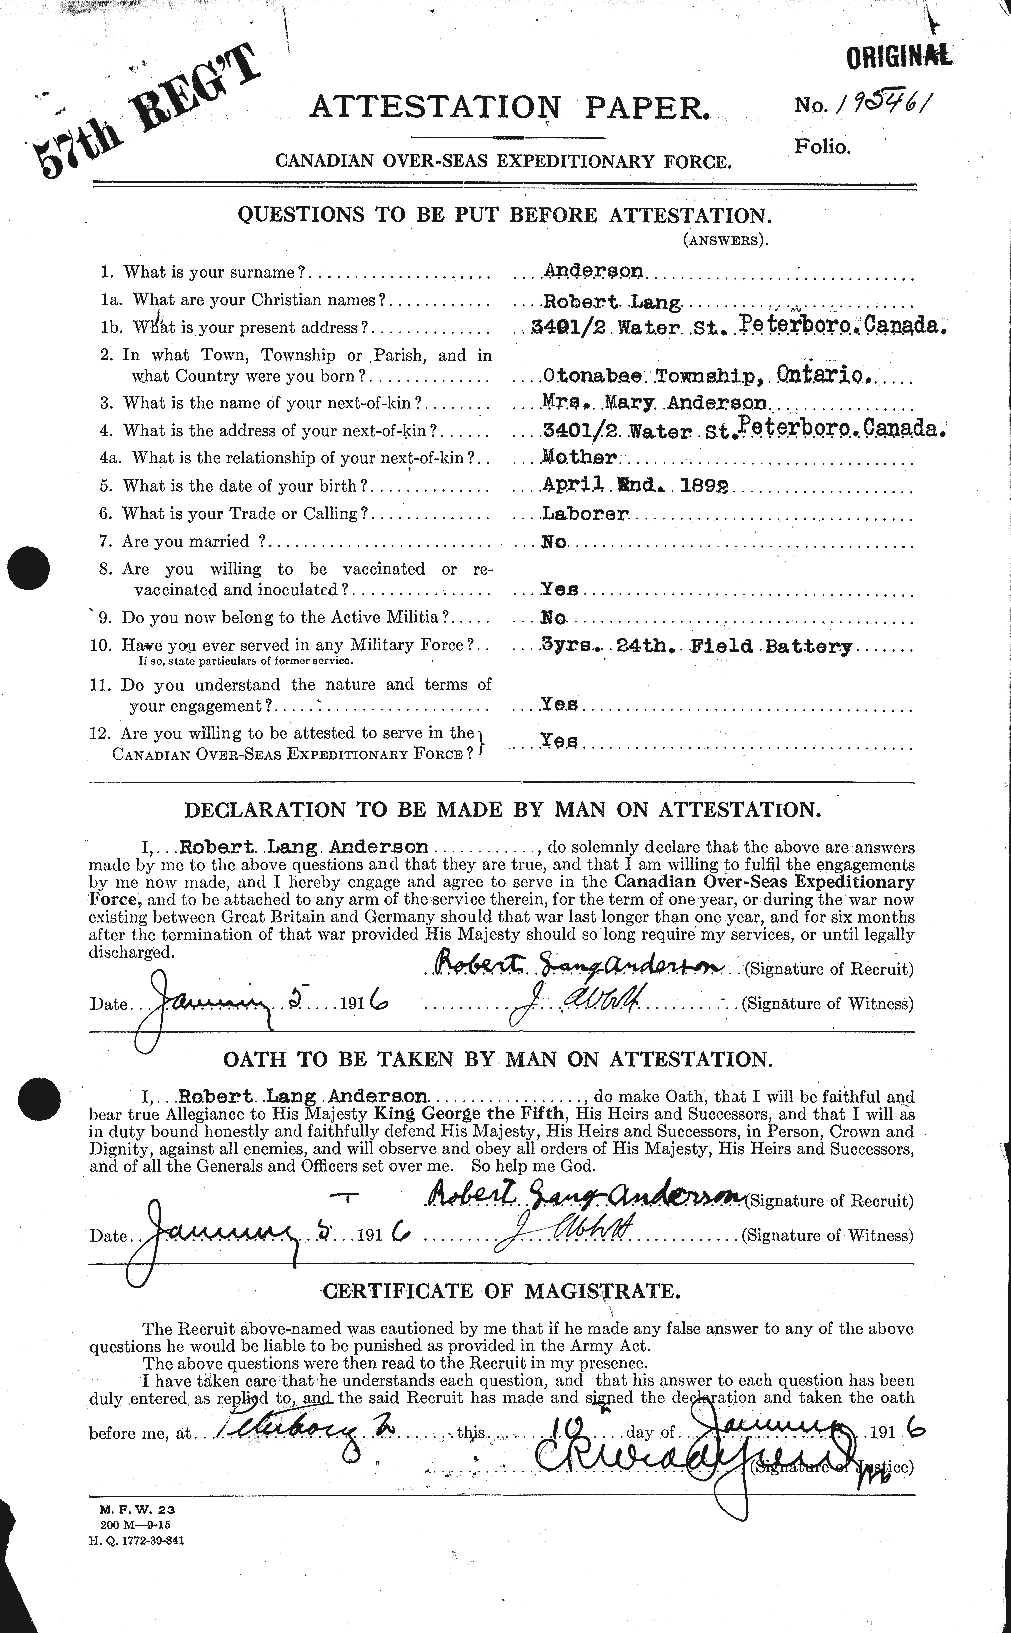 Dossiers du Personnel de la Première Guerre mondiale - CEC 207237a